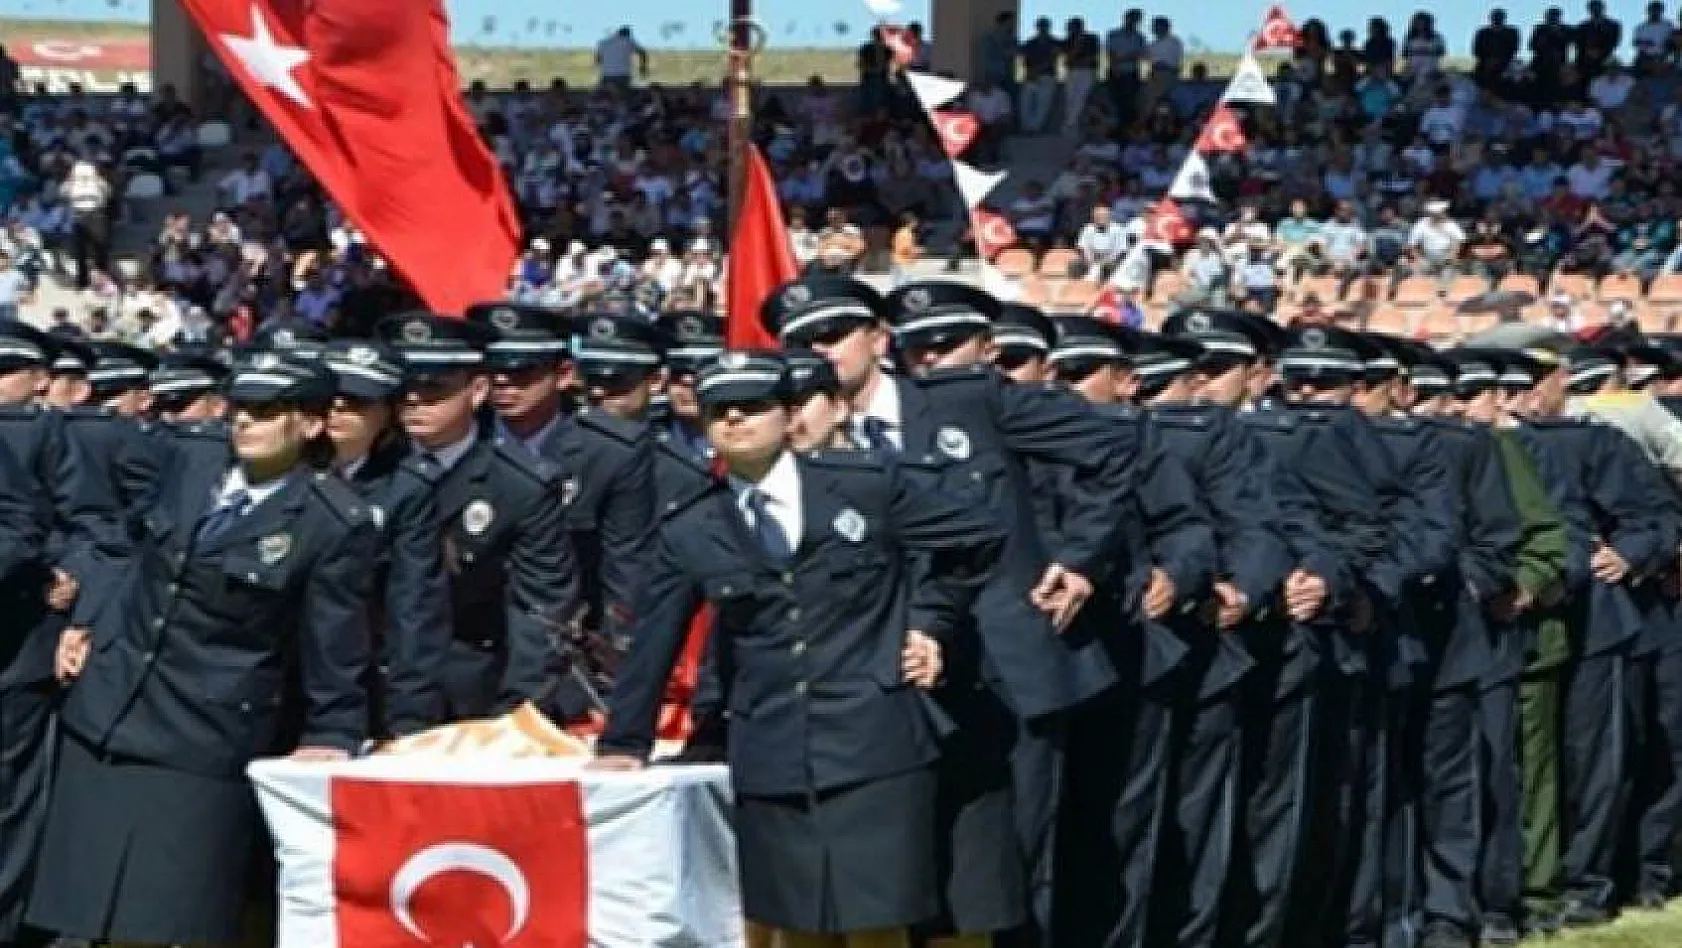 13 bin polis memuru adayı alınacak